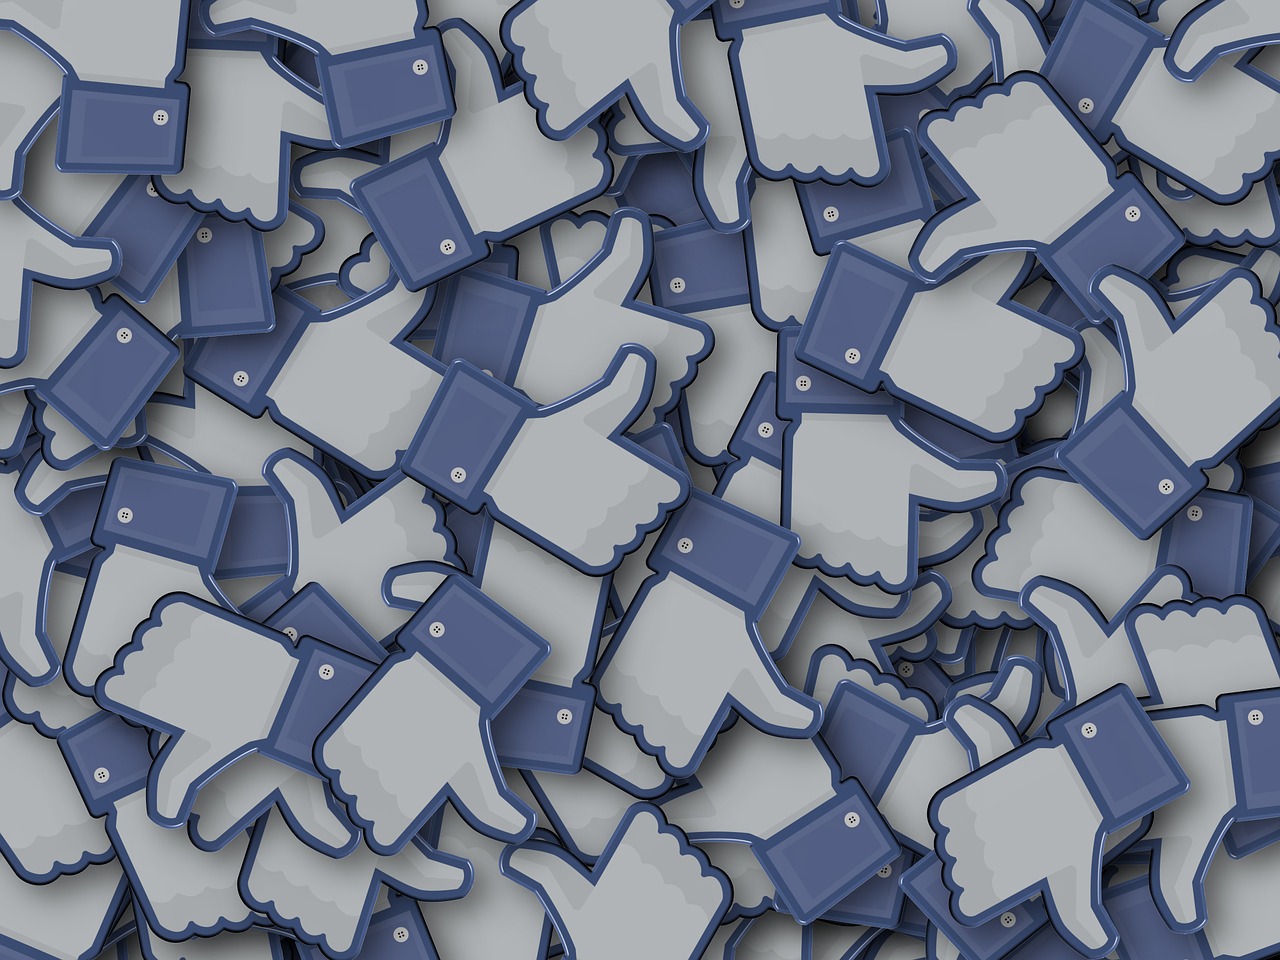 Facebook pourrait cacher le nombre de mentions "likes"